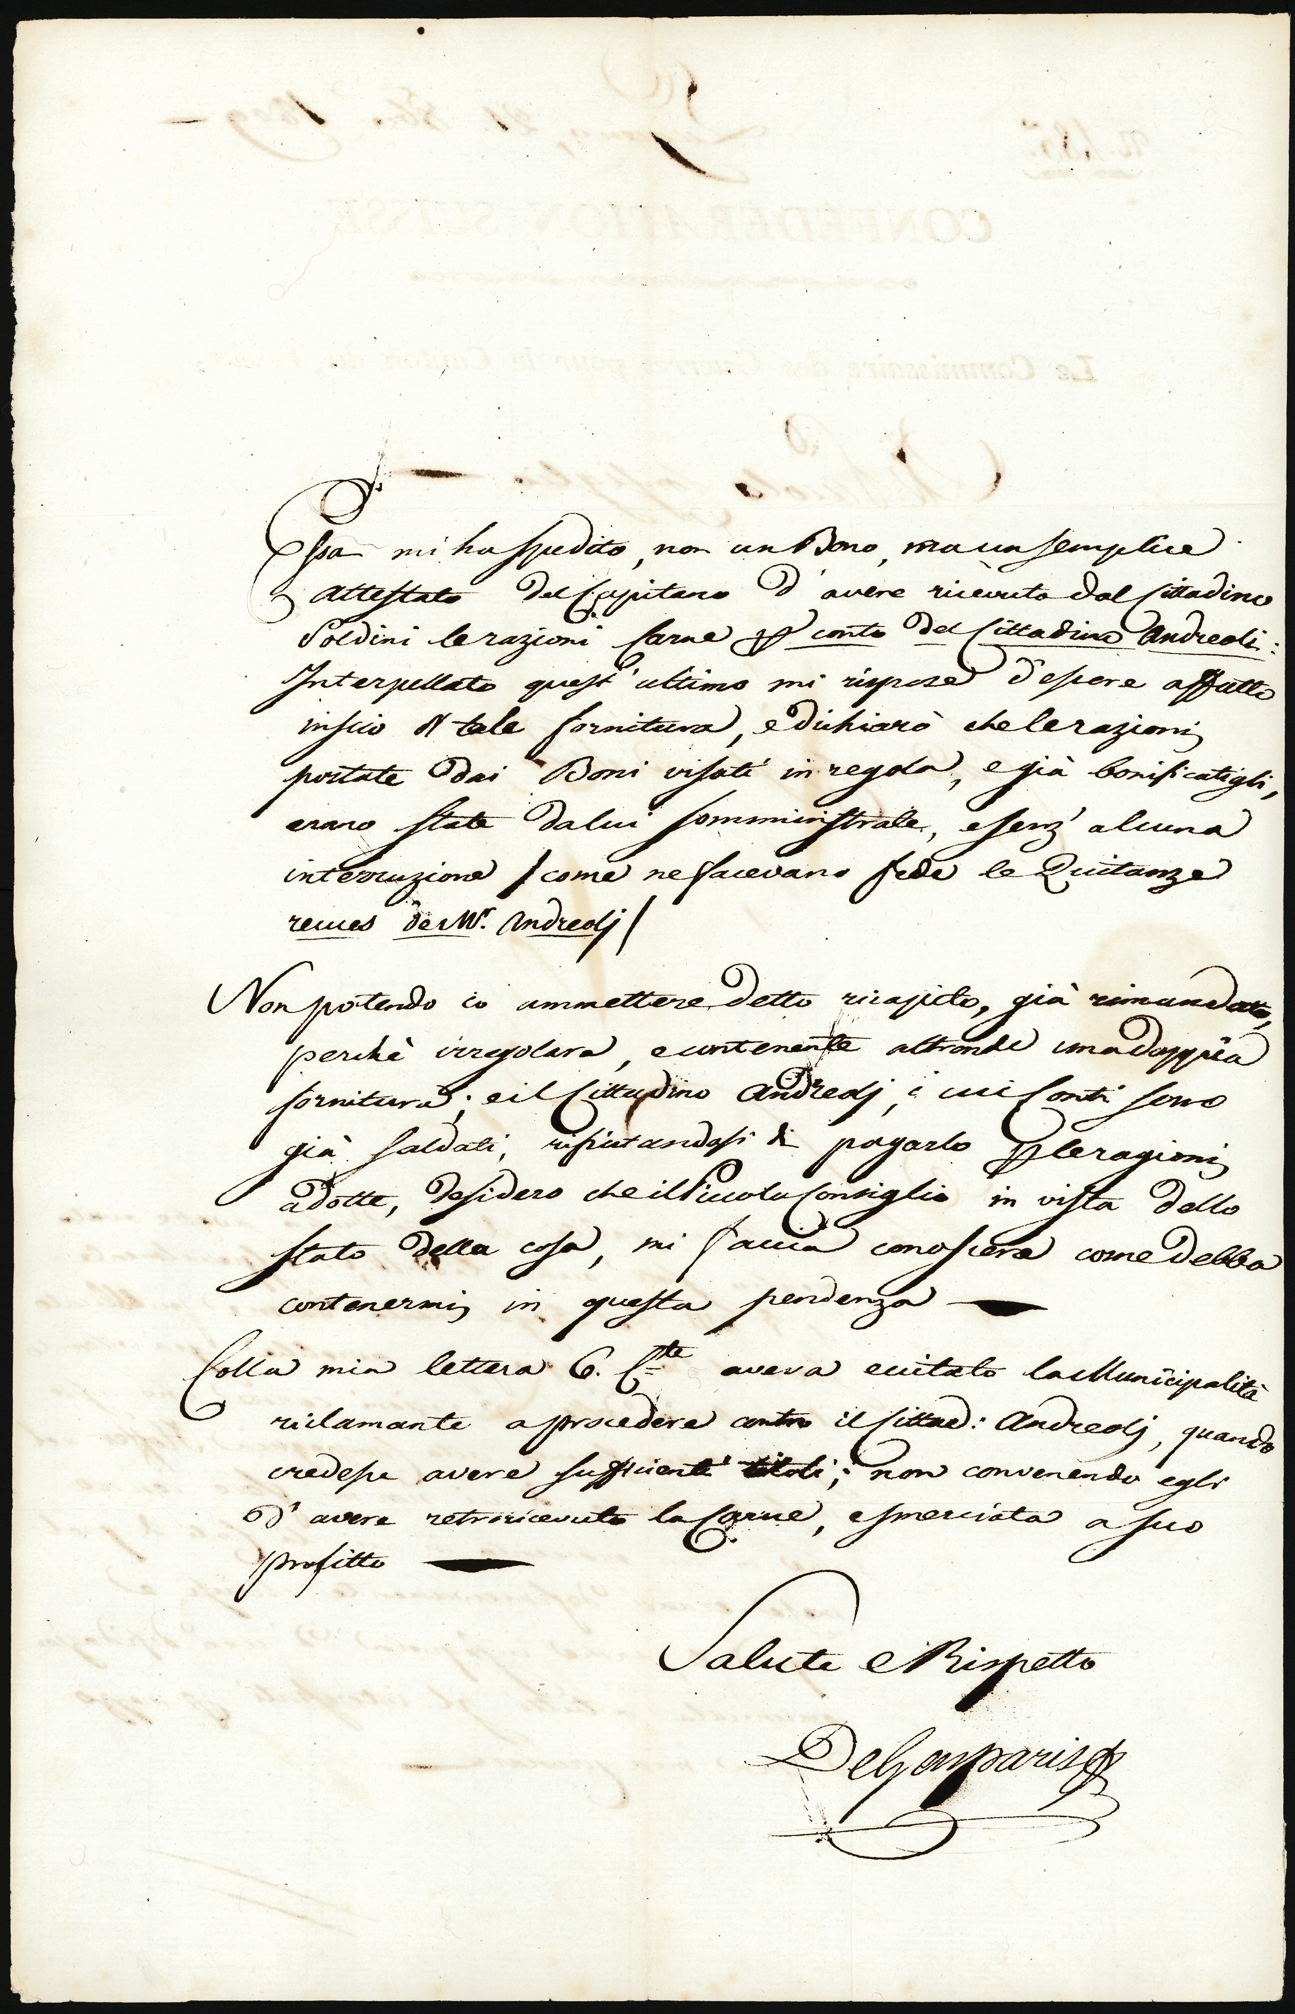 Referenz: de-gasparis-pietro-kriegskommissar-des-kantons-tessin-1803-17